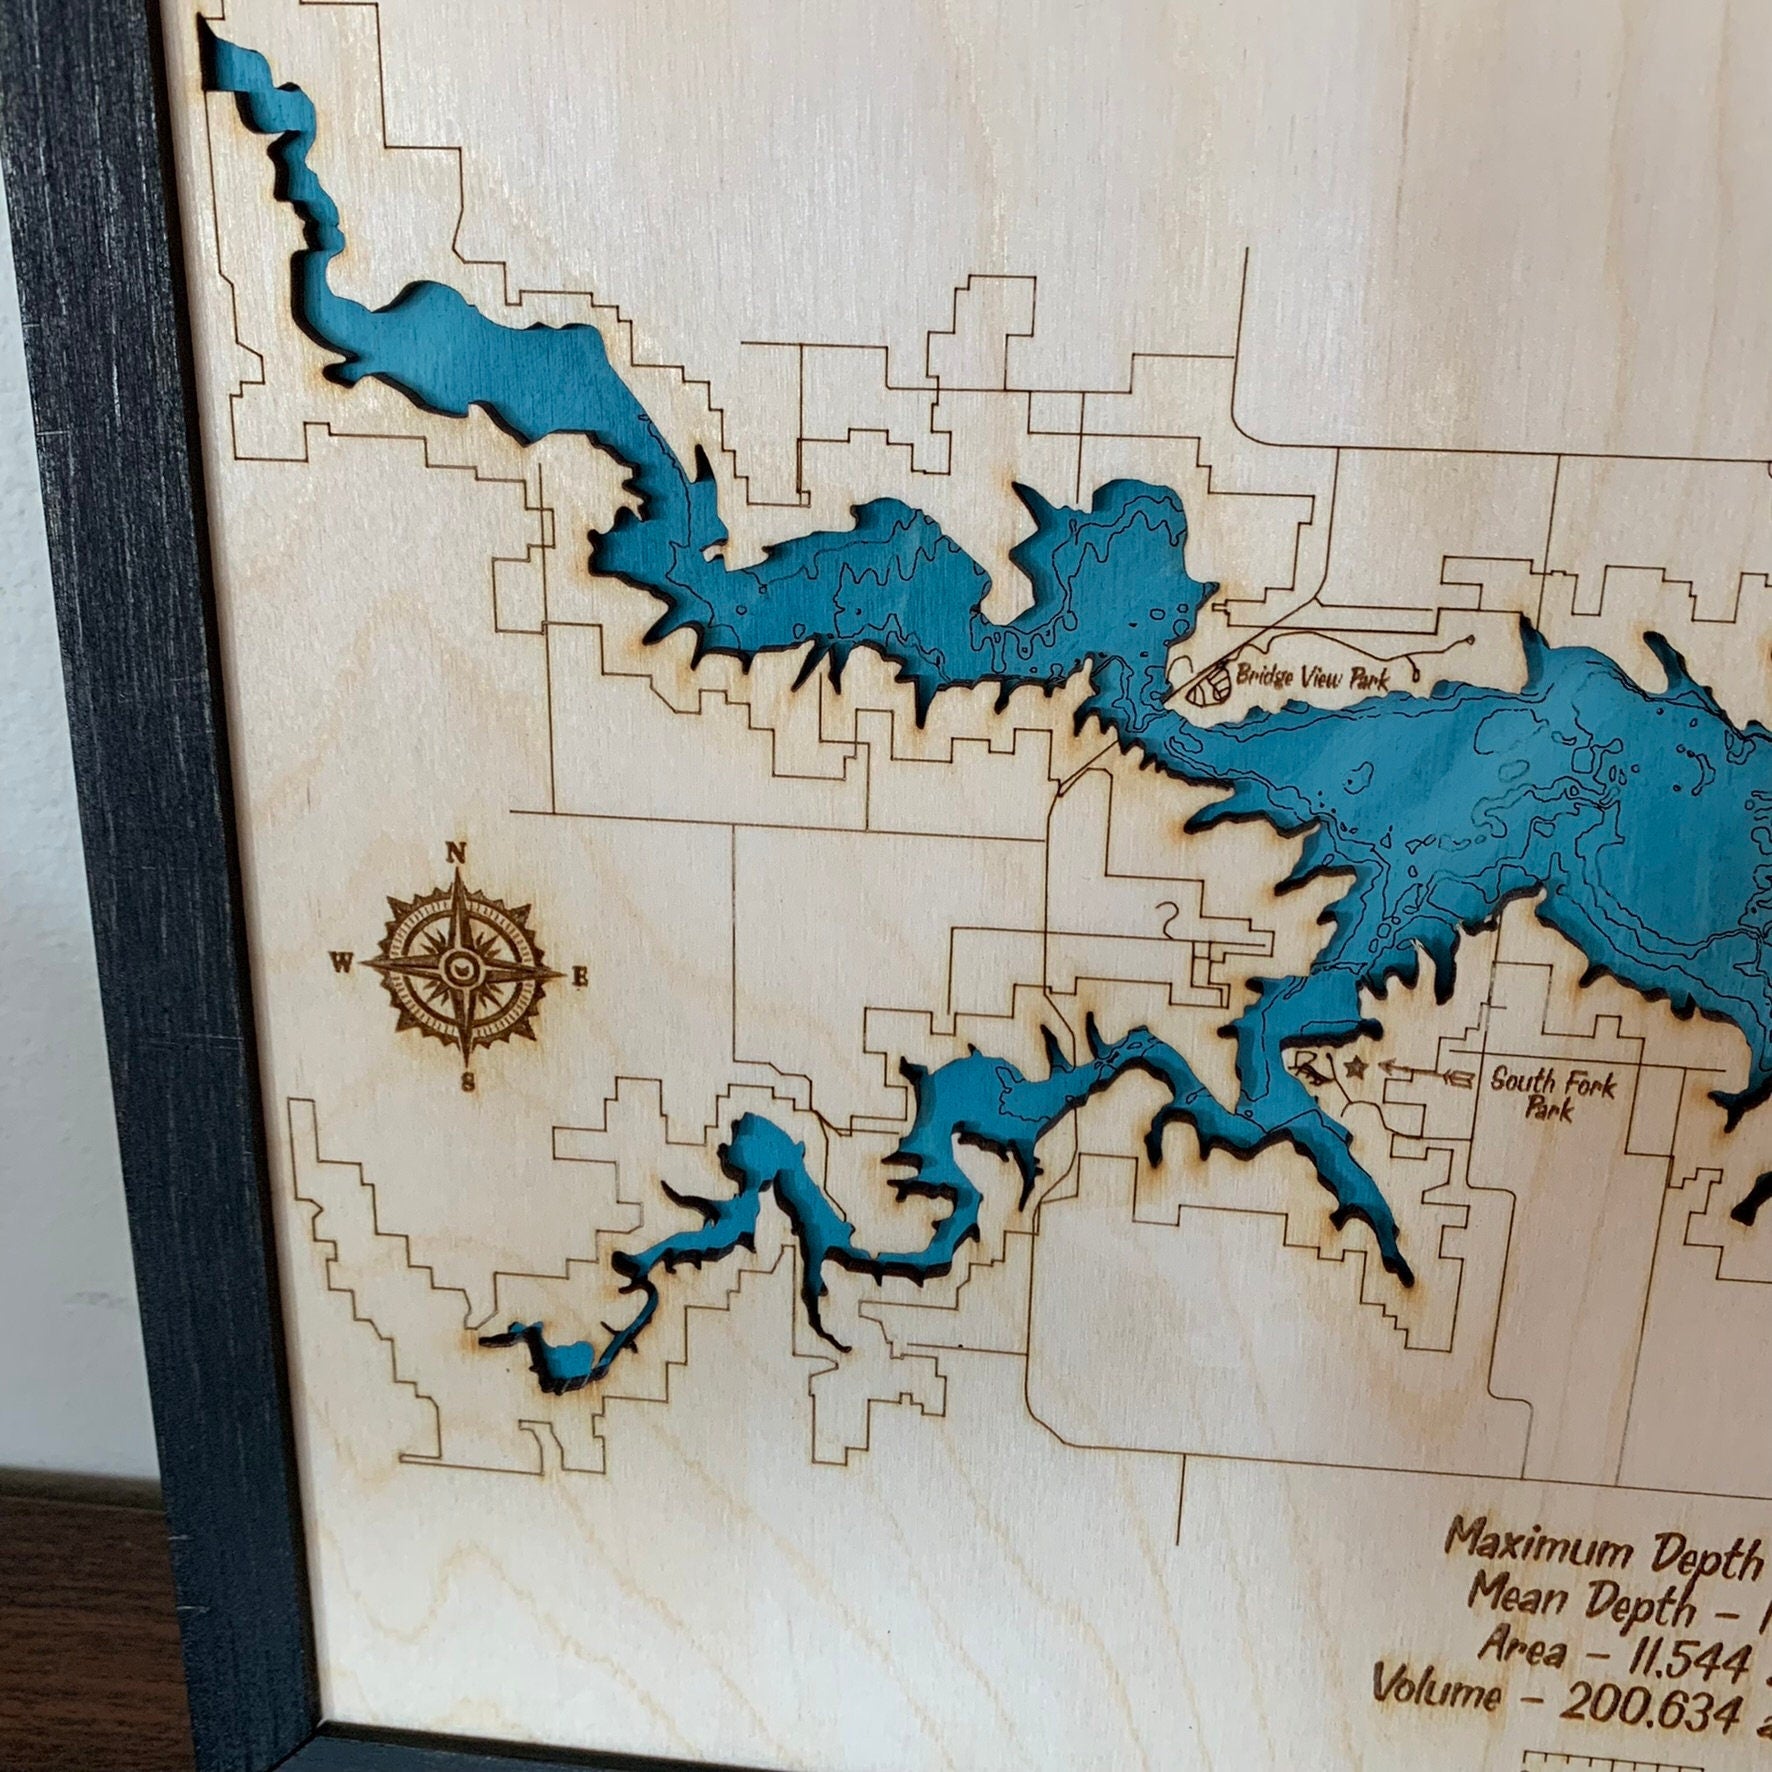 Laser Cut Engraved Wood Lake Map - Rathbun Lake - Appanoose County Iowa